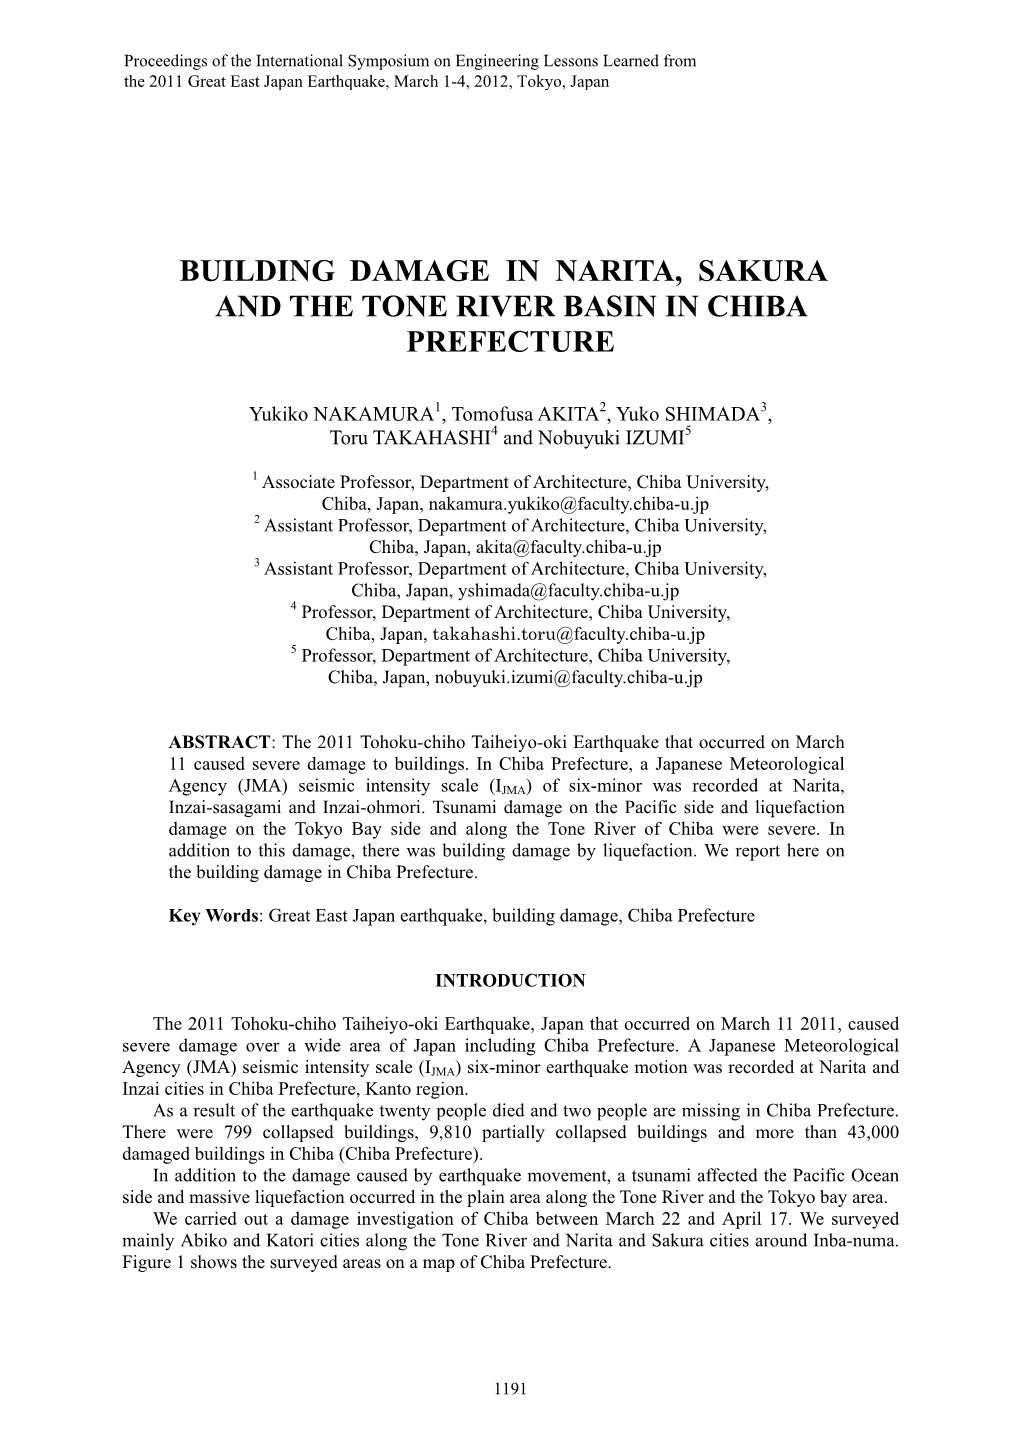 Building Damage in Narita, Sakura and the Tone River Basin in Chiba Prefecture